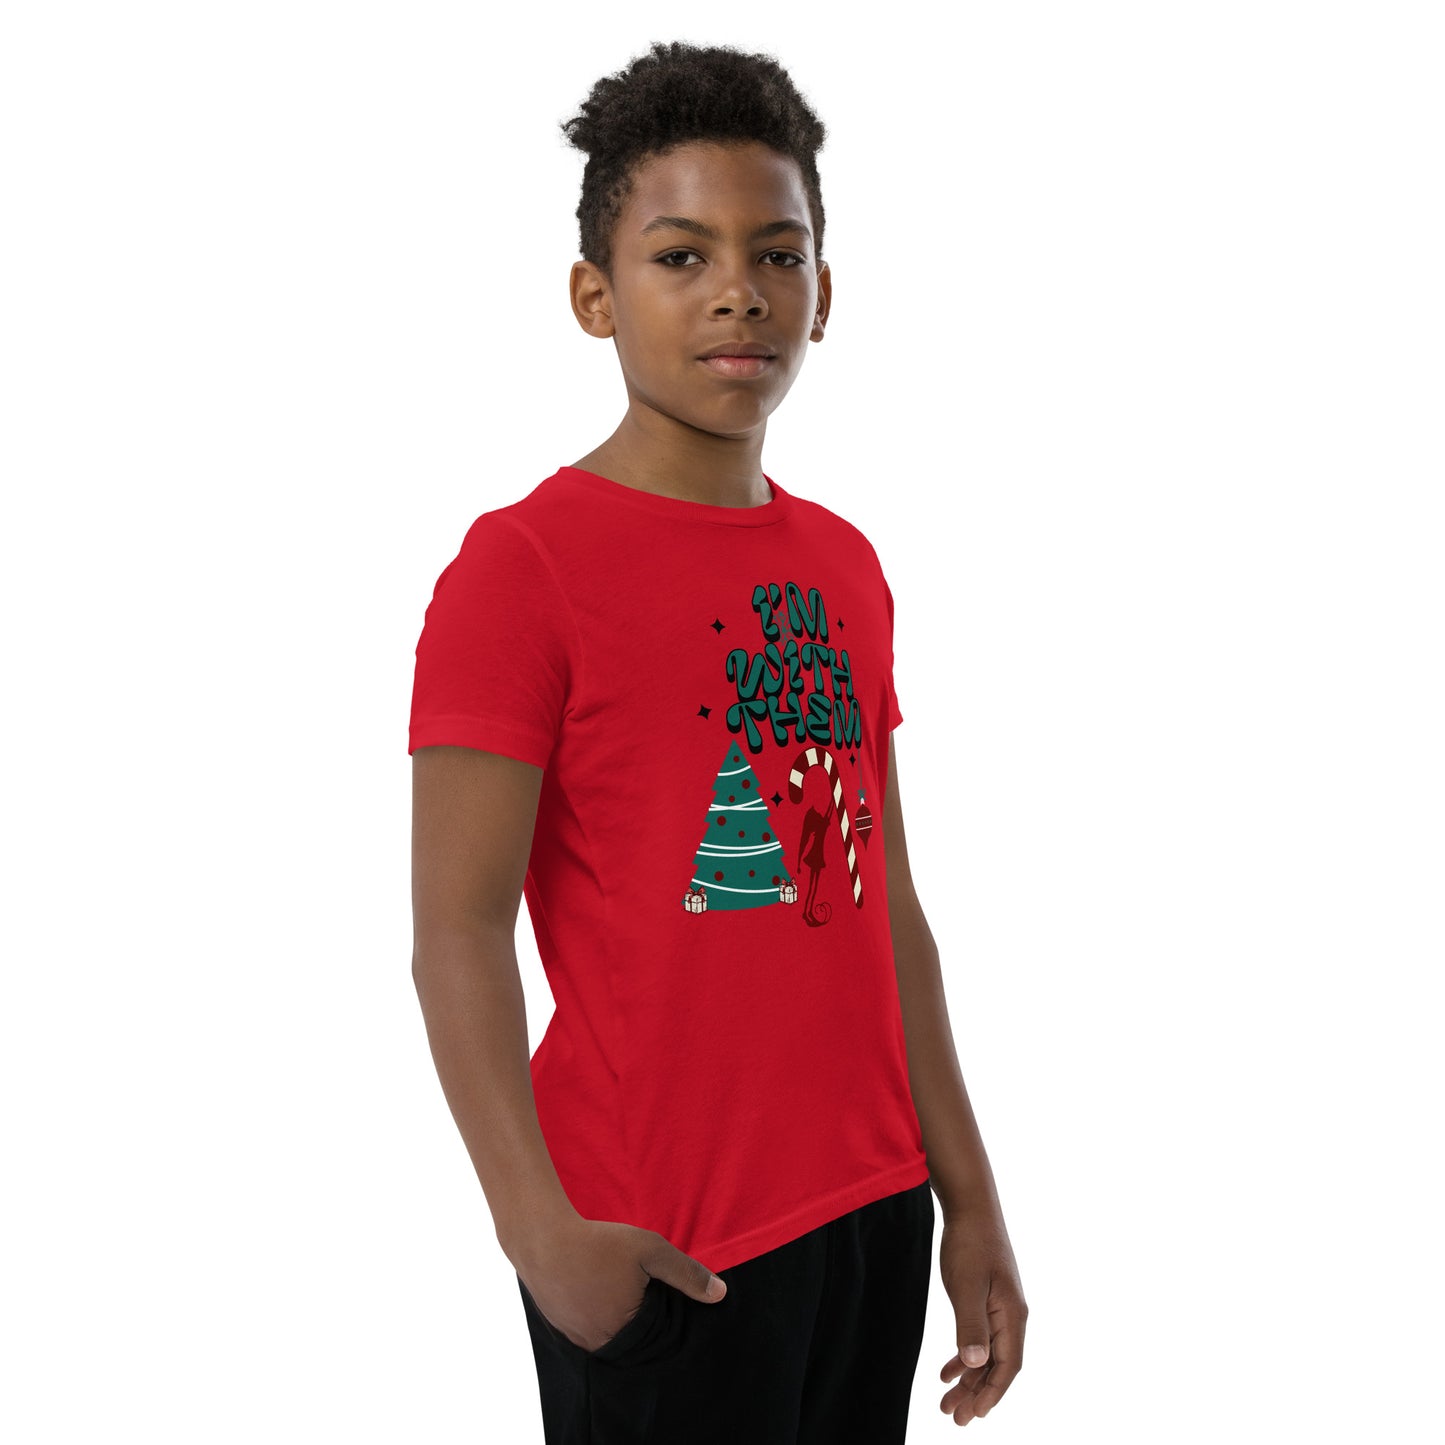 T-shirt de Noël pour jeunes - JE SUIS AVEC EUX !